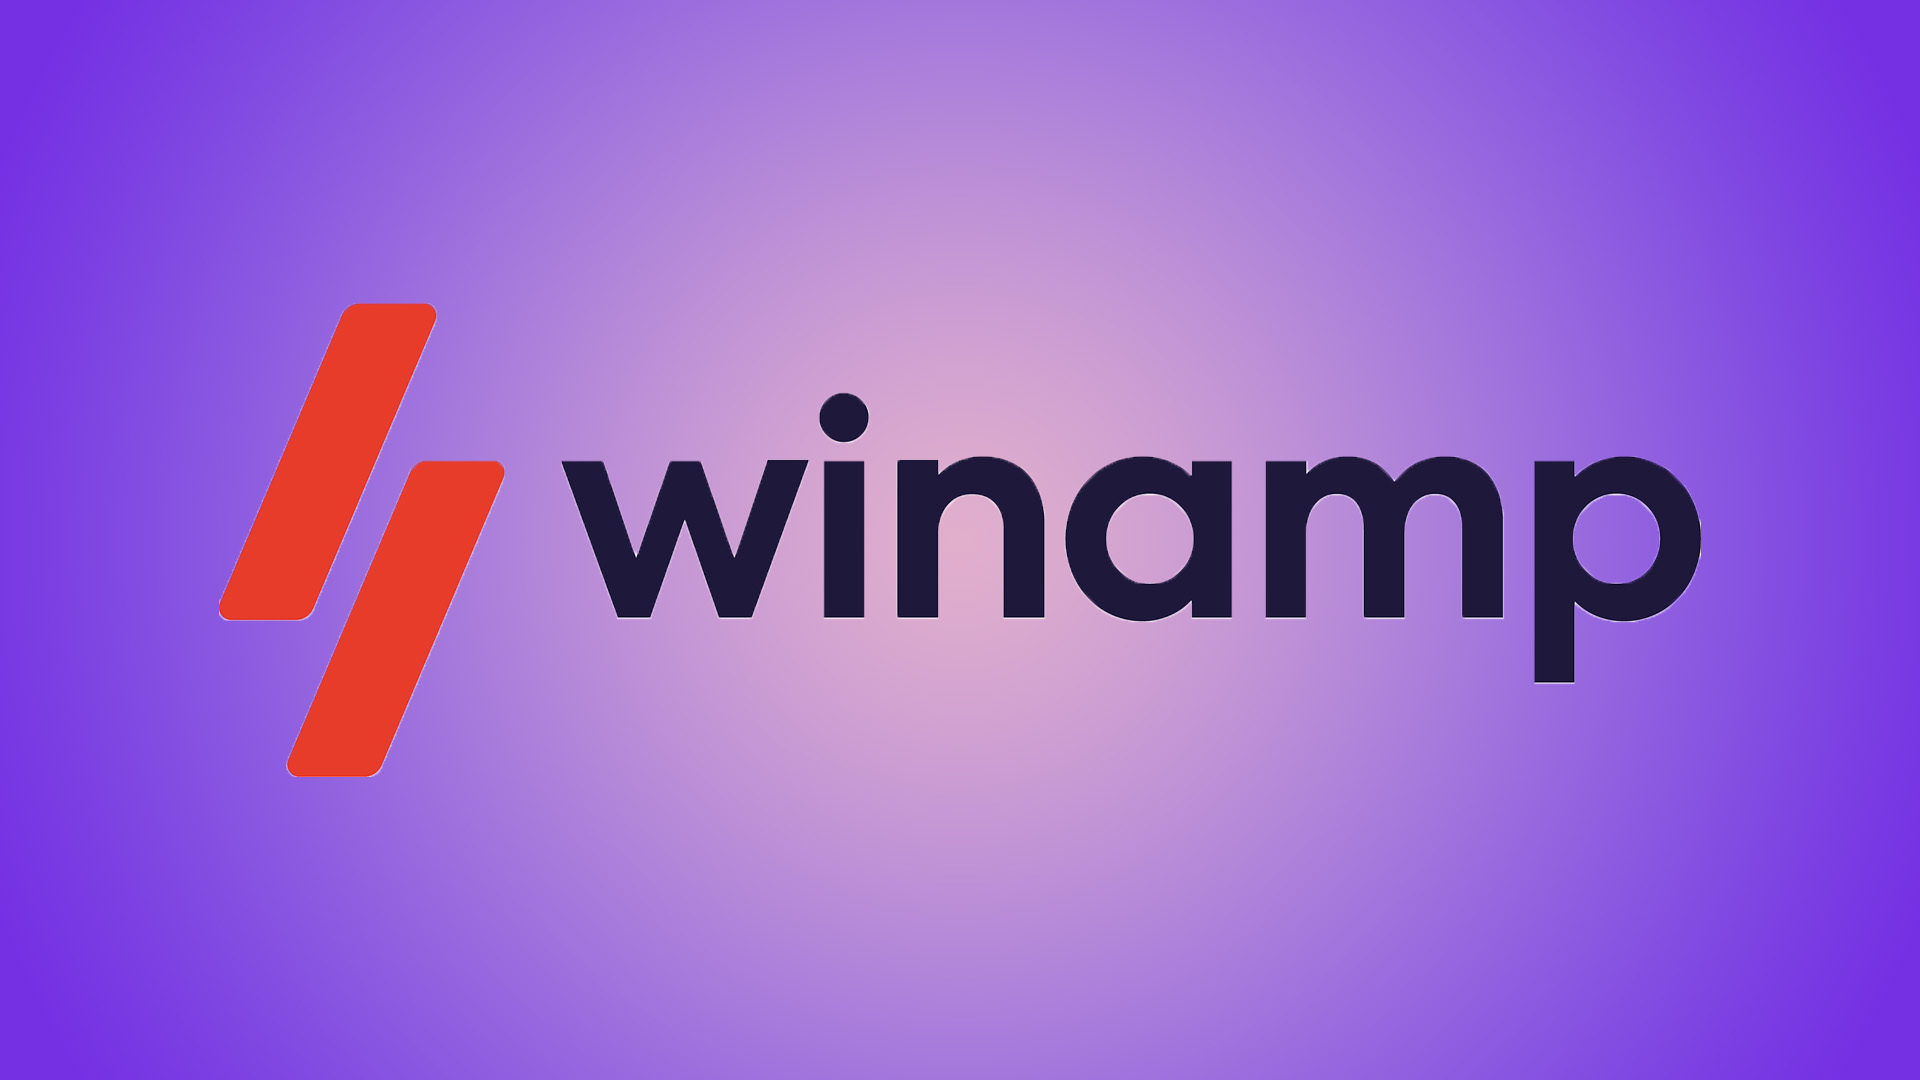 Легендарный Winamp вернут к жизни в виде стримингового сервиса 15 марта